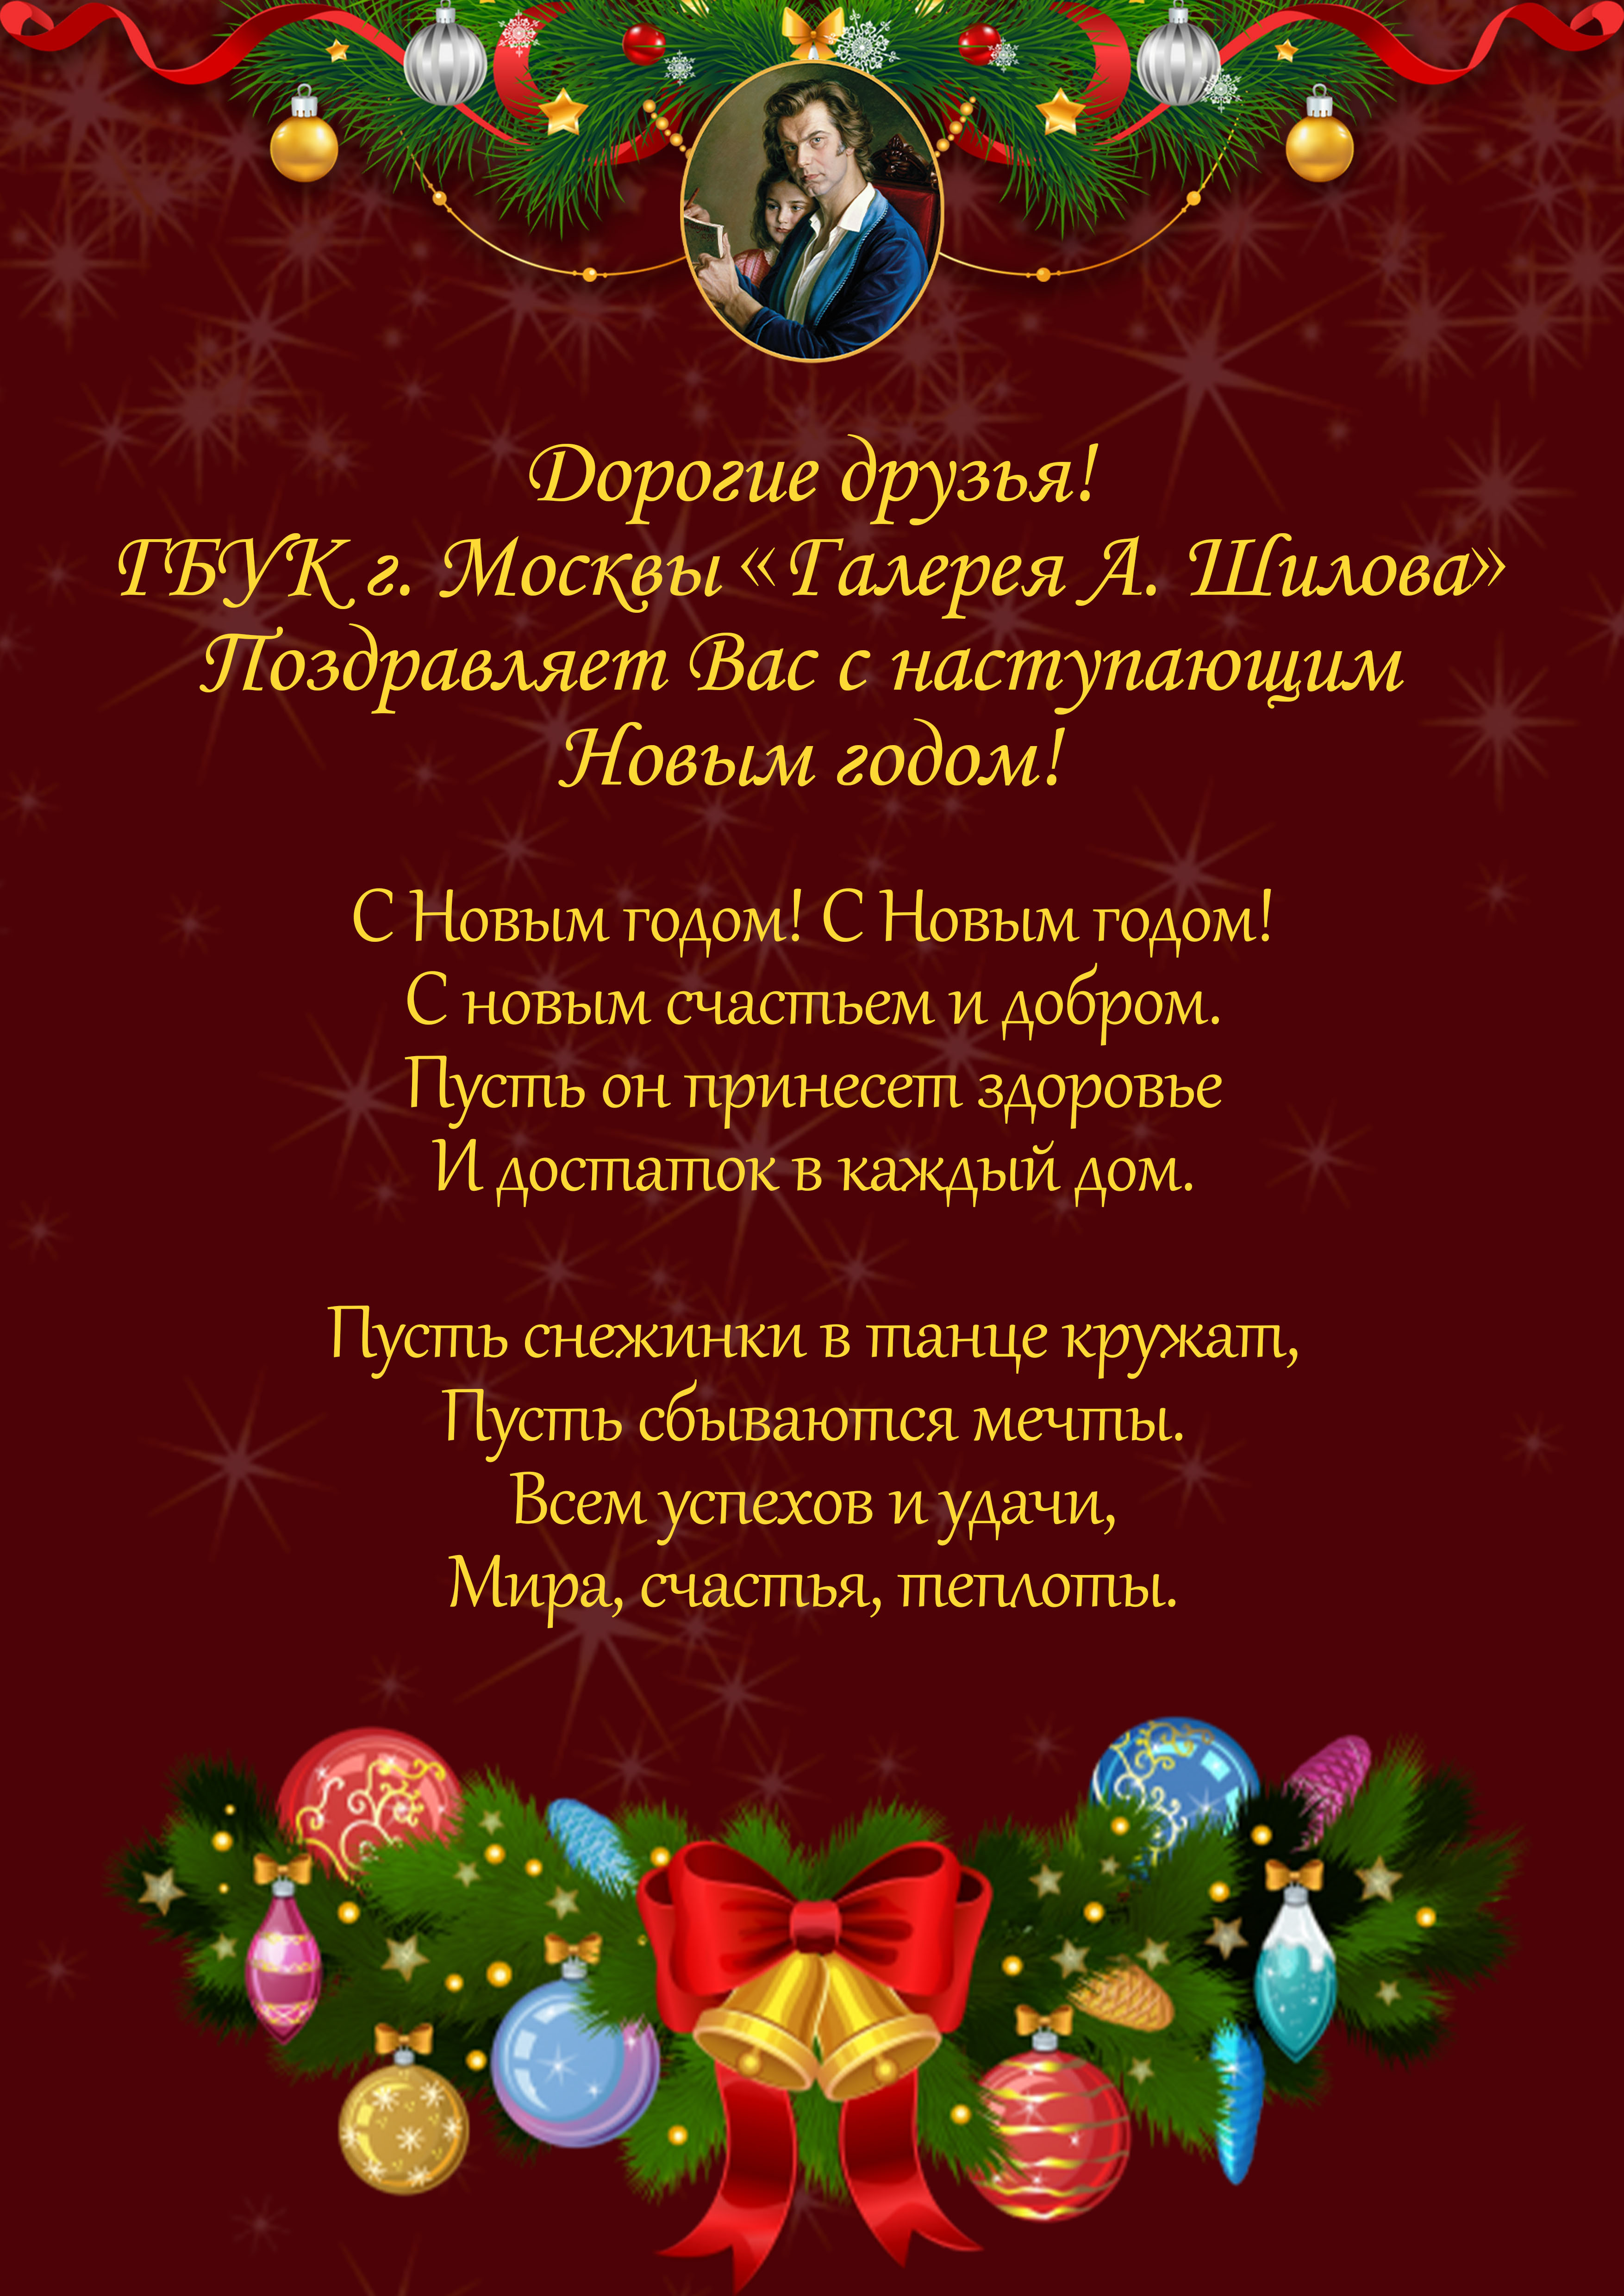 ГБУК г. Москвы «Галерея А. Шилова» поздравляет всех с наступающими Новым годом!